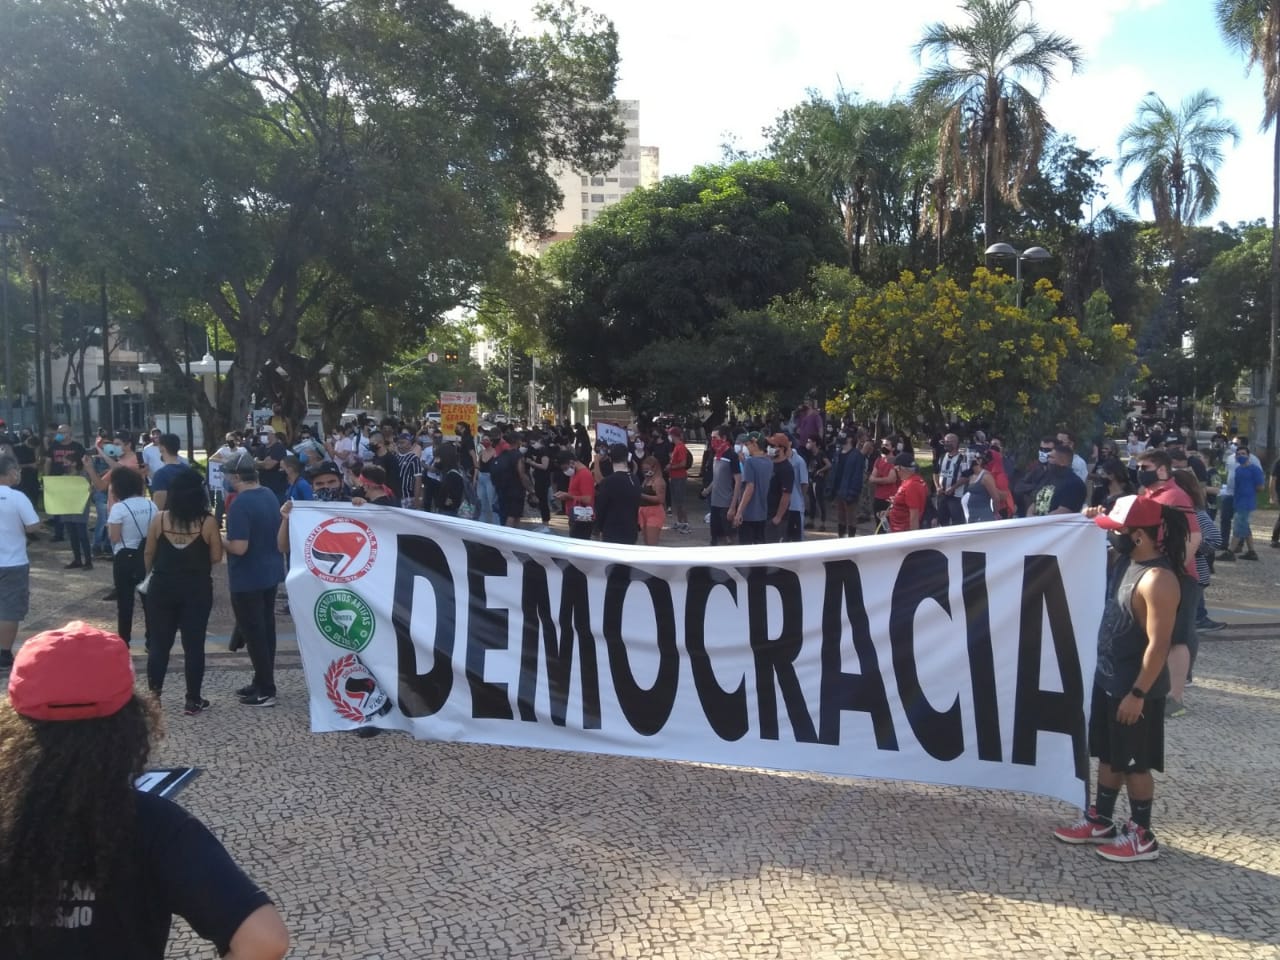 Protesto é resposta a atos antidemocráticos, diz presidente de organizada